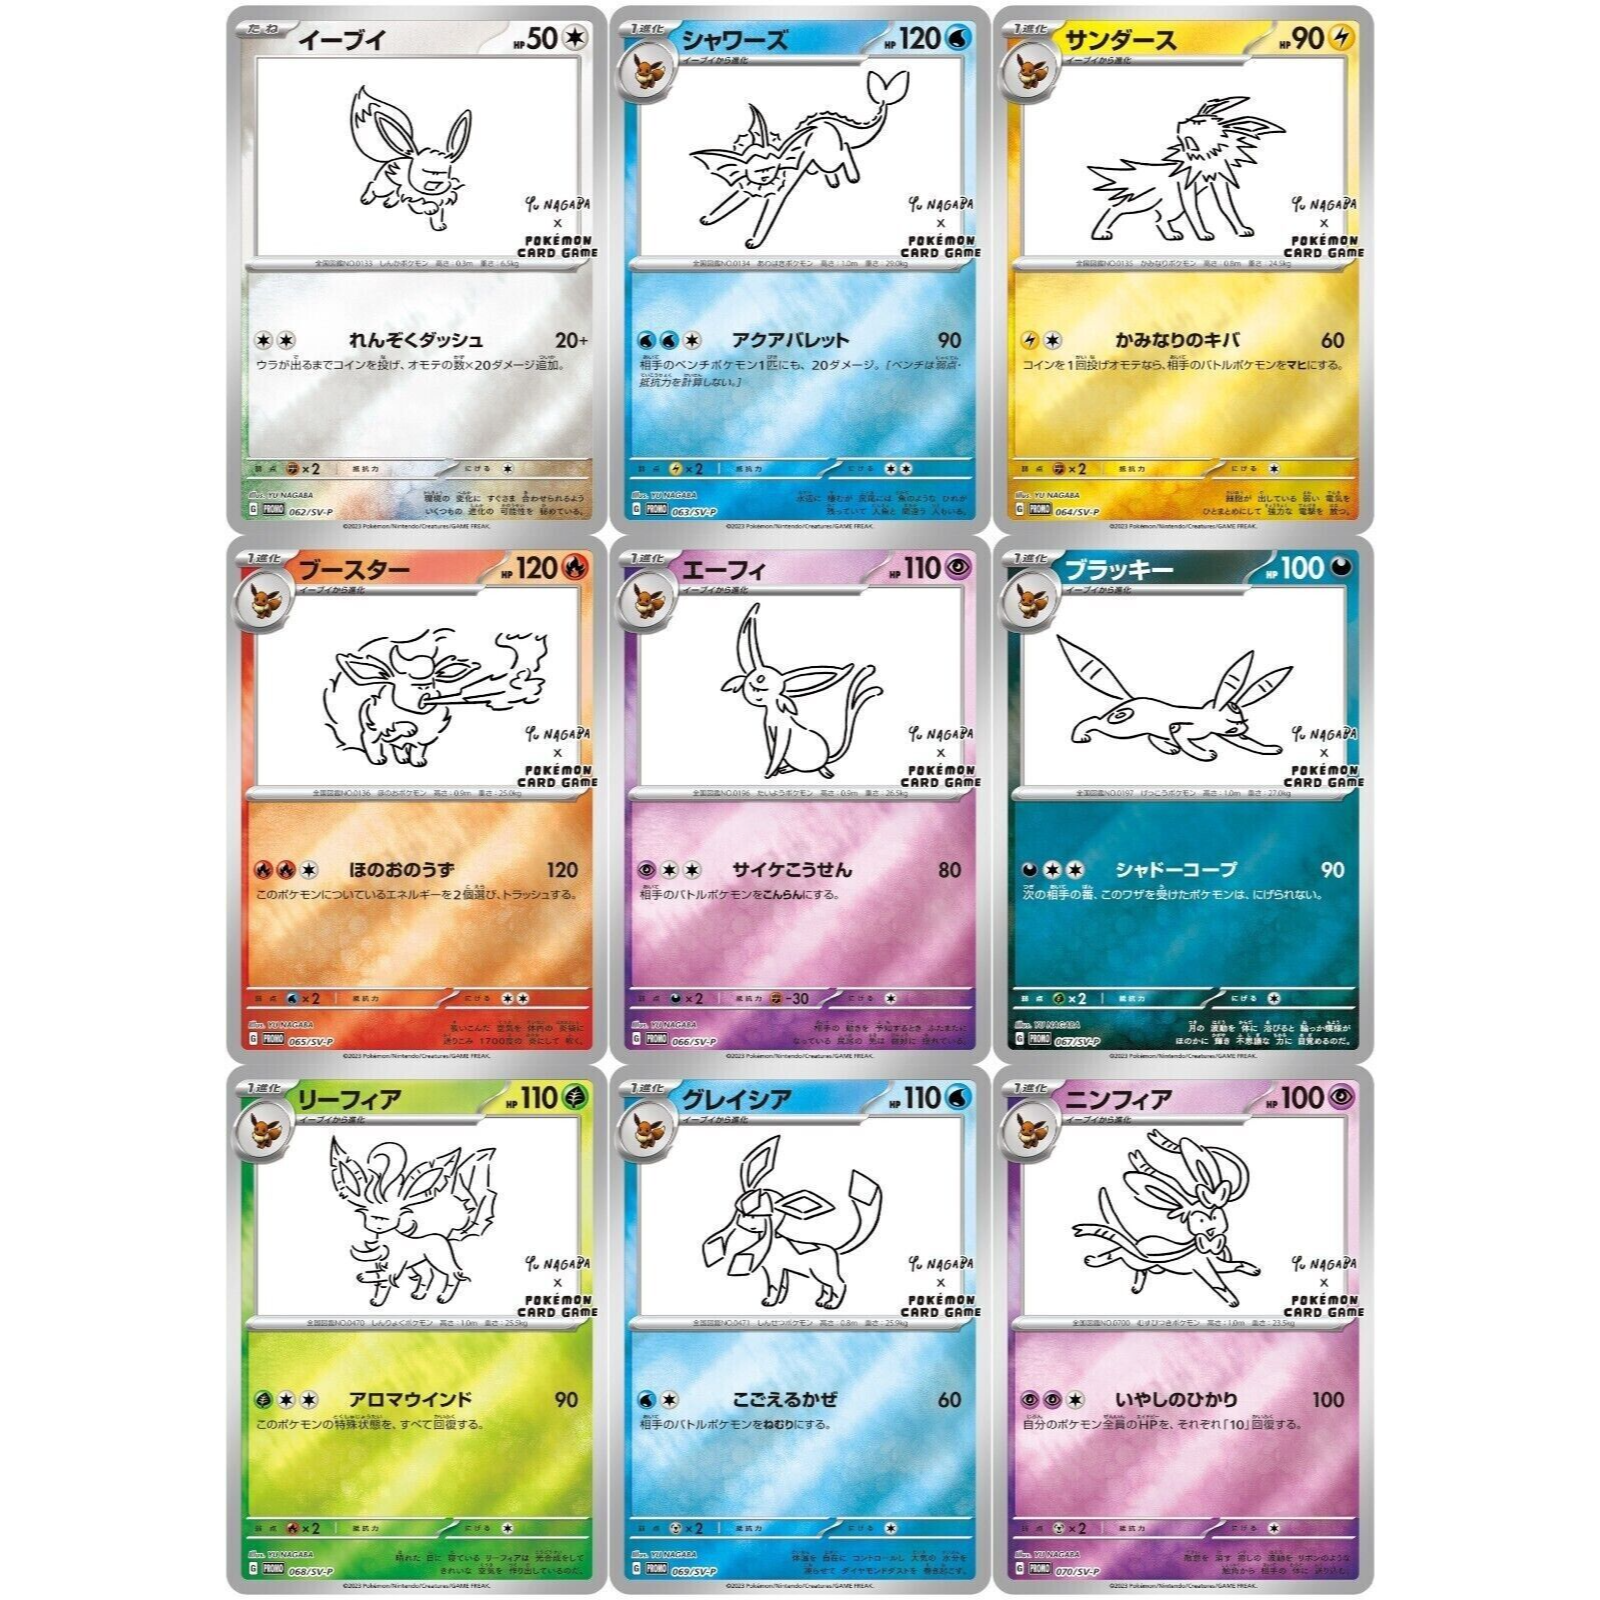 Eeveelutions Print -   Pokemon eevee evolutions, Pokemon eevee,  Pokemon eeveelutions